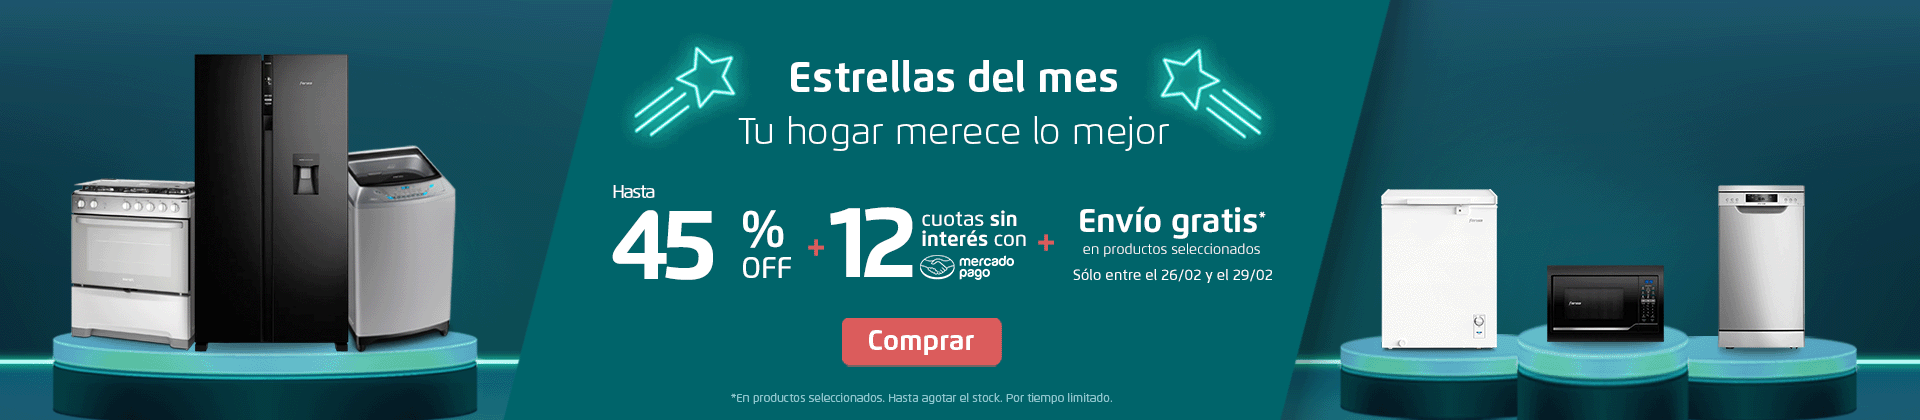 Estrellas del MES - Hasta 45% Off + 12 cuotas sin interés con Mercado Pago - Sólo entre el 01/02 y el 04/02